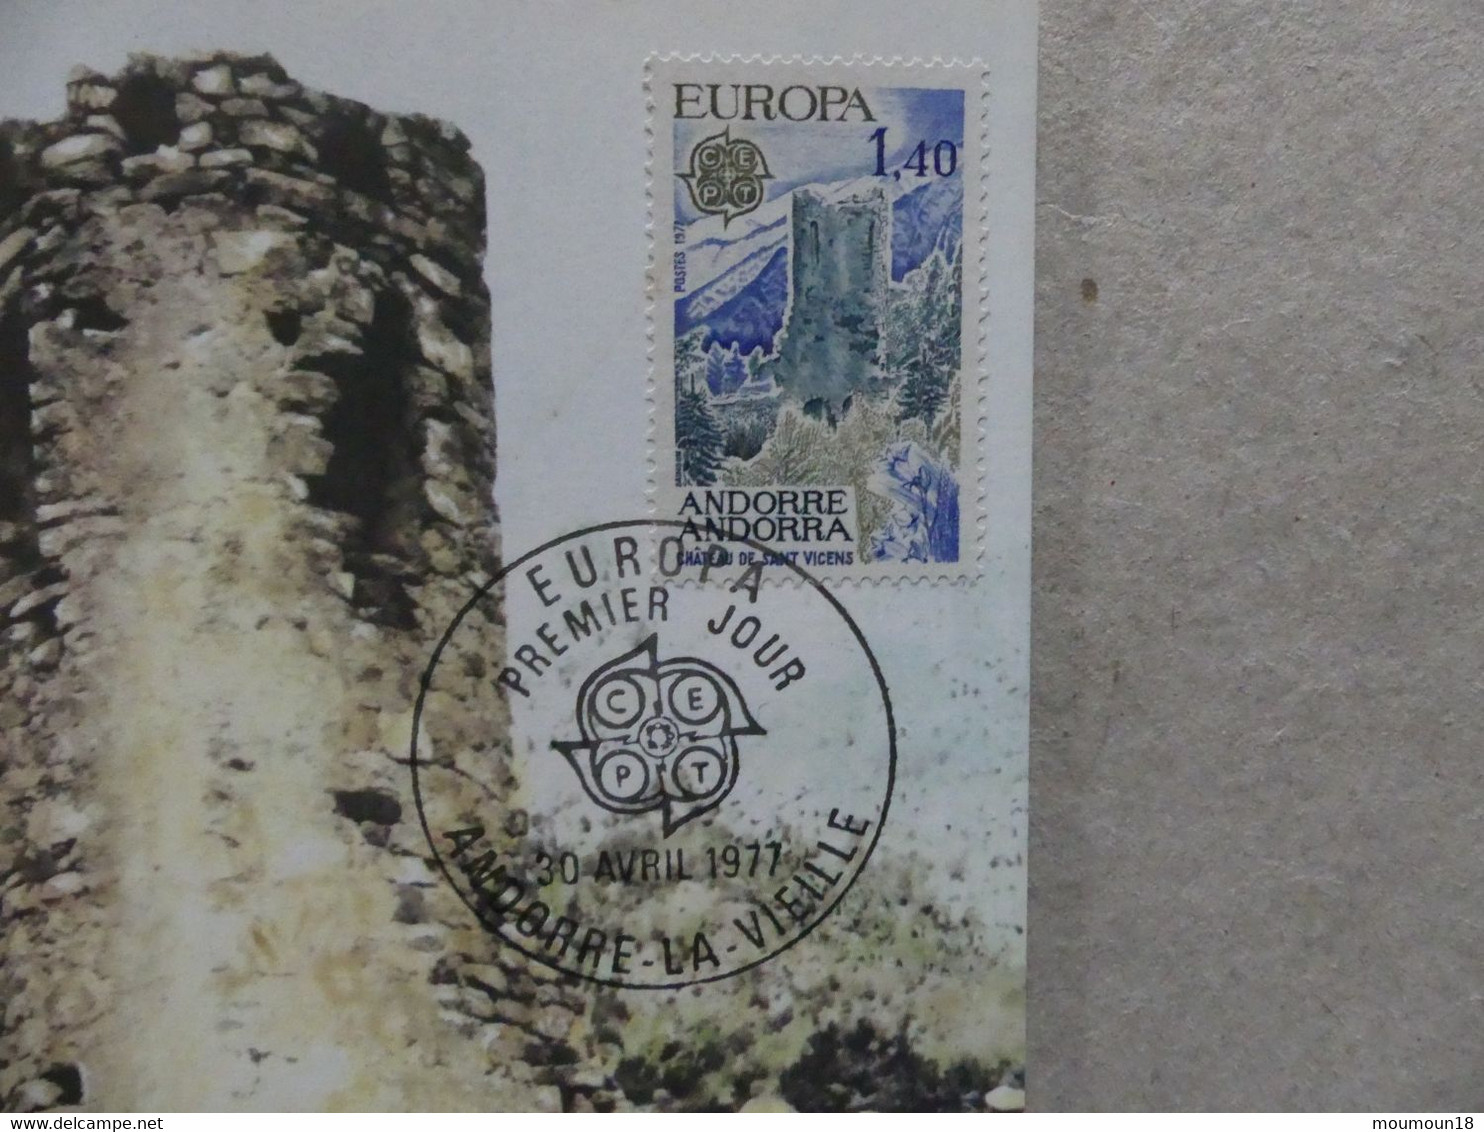 Carte Postale 1er Premier Jour Europa Chateau De Sant Vicens 30 Avril 1977  Andorre-la-Vieille - Covers & Documents